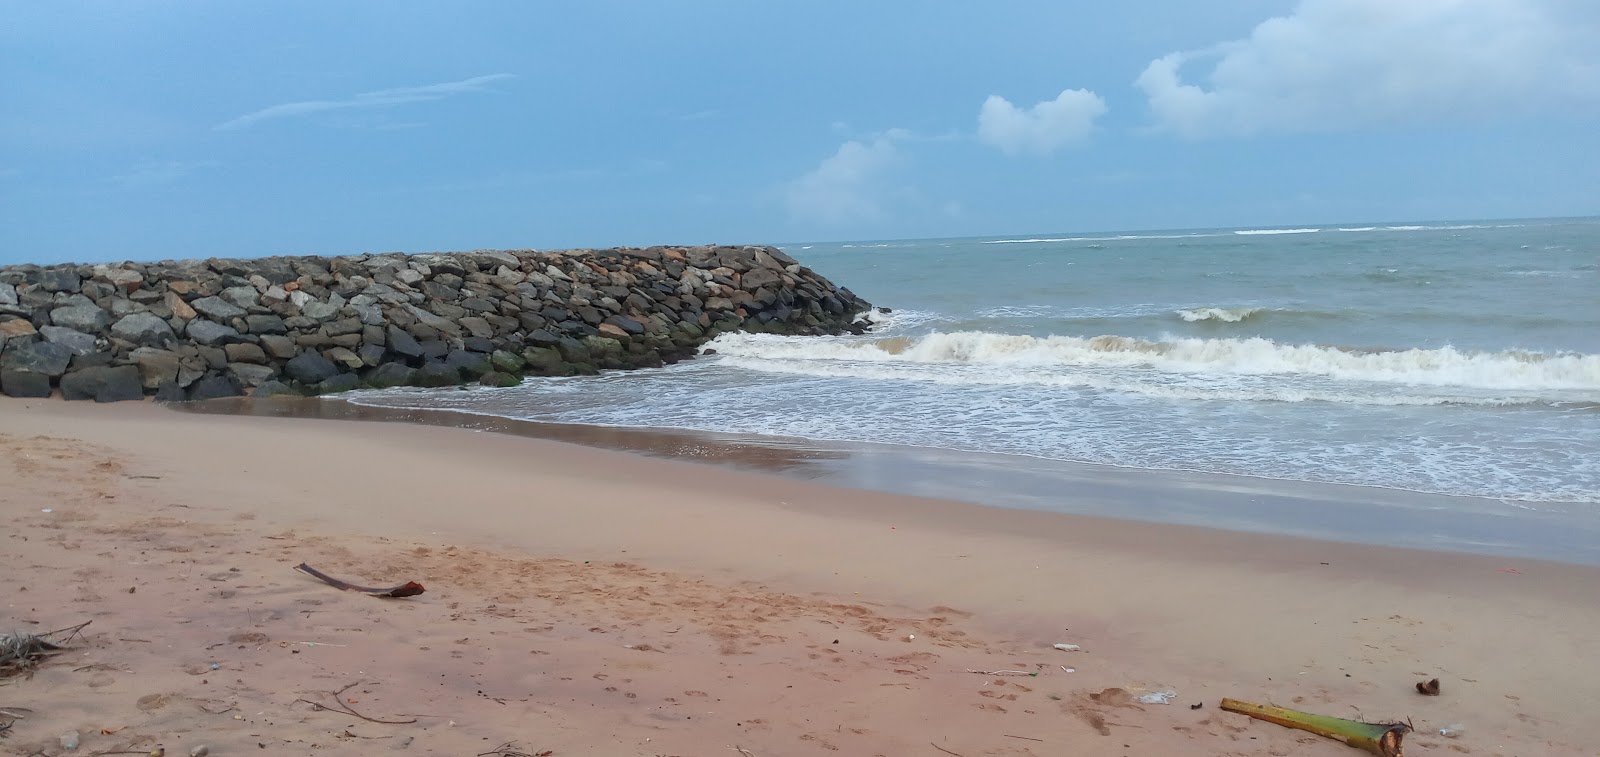 Koottappanai Beach'in fotoğrafı parlak kum yüzey ile